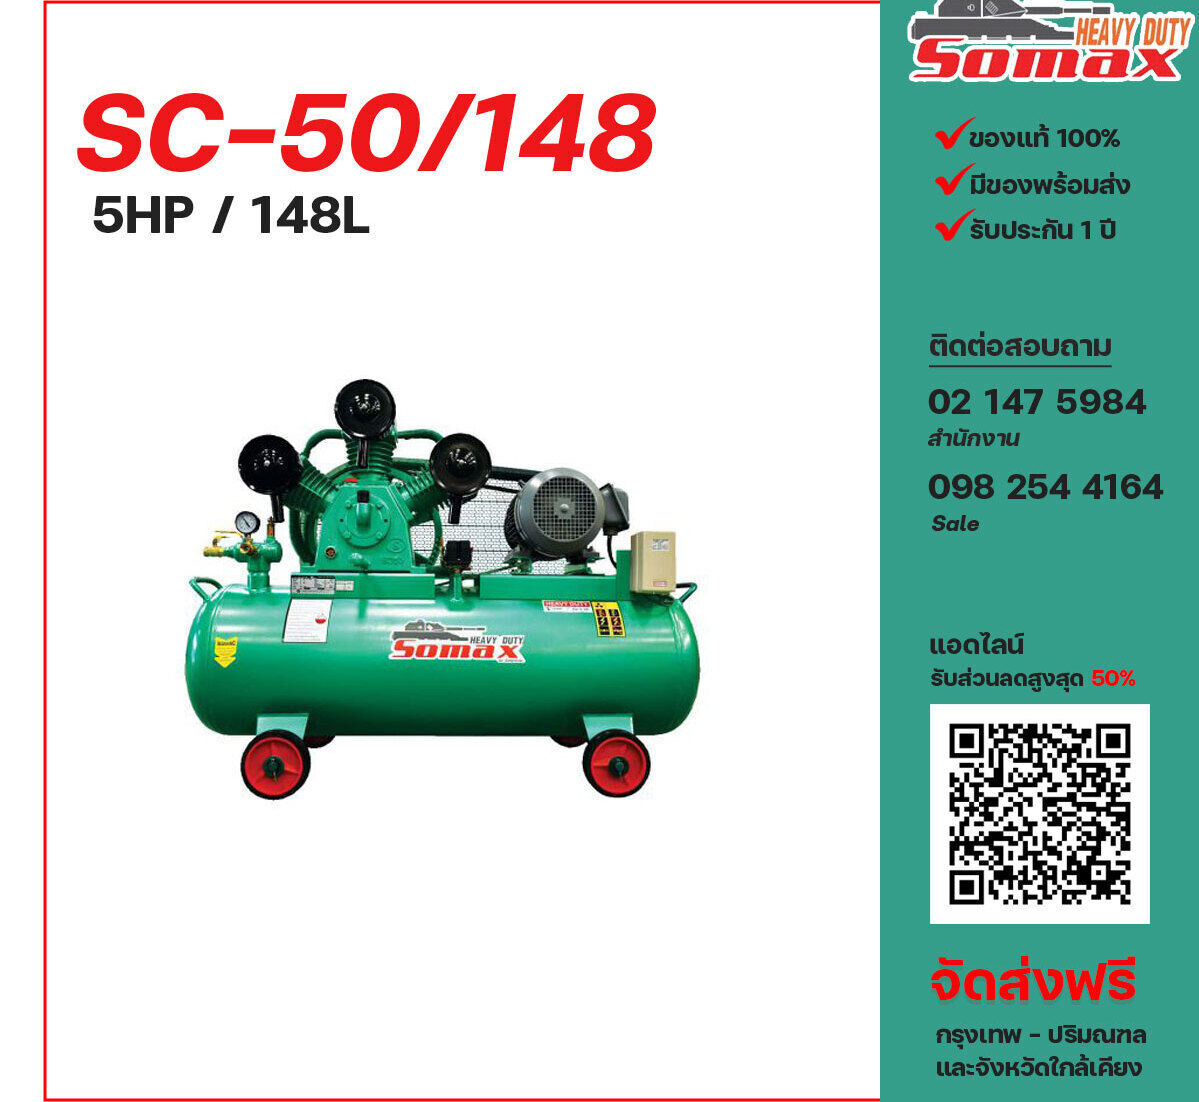 ปั๊มลมโซแม็กซ์ SOMAX SC-50/148 220V/380V ปั๊มลมลูกสูบ ขนาด 3 สูบ 5 แรงม้า 148 ลิตร SOMAX พร้อมมอเตอร์ ไฟ 220V/380V ส่งฟรี กรุงเทพฯ-ปริมณฑล รับประกัน 1 ปี